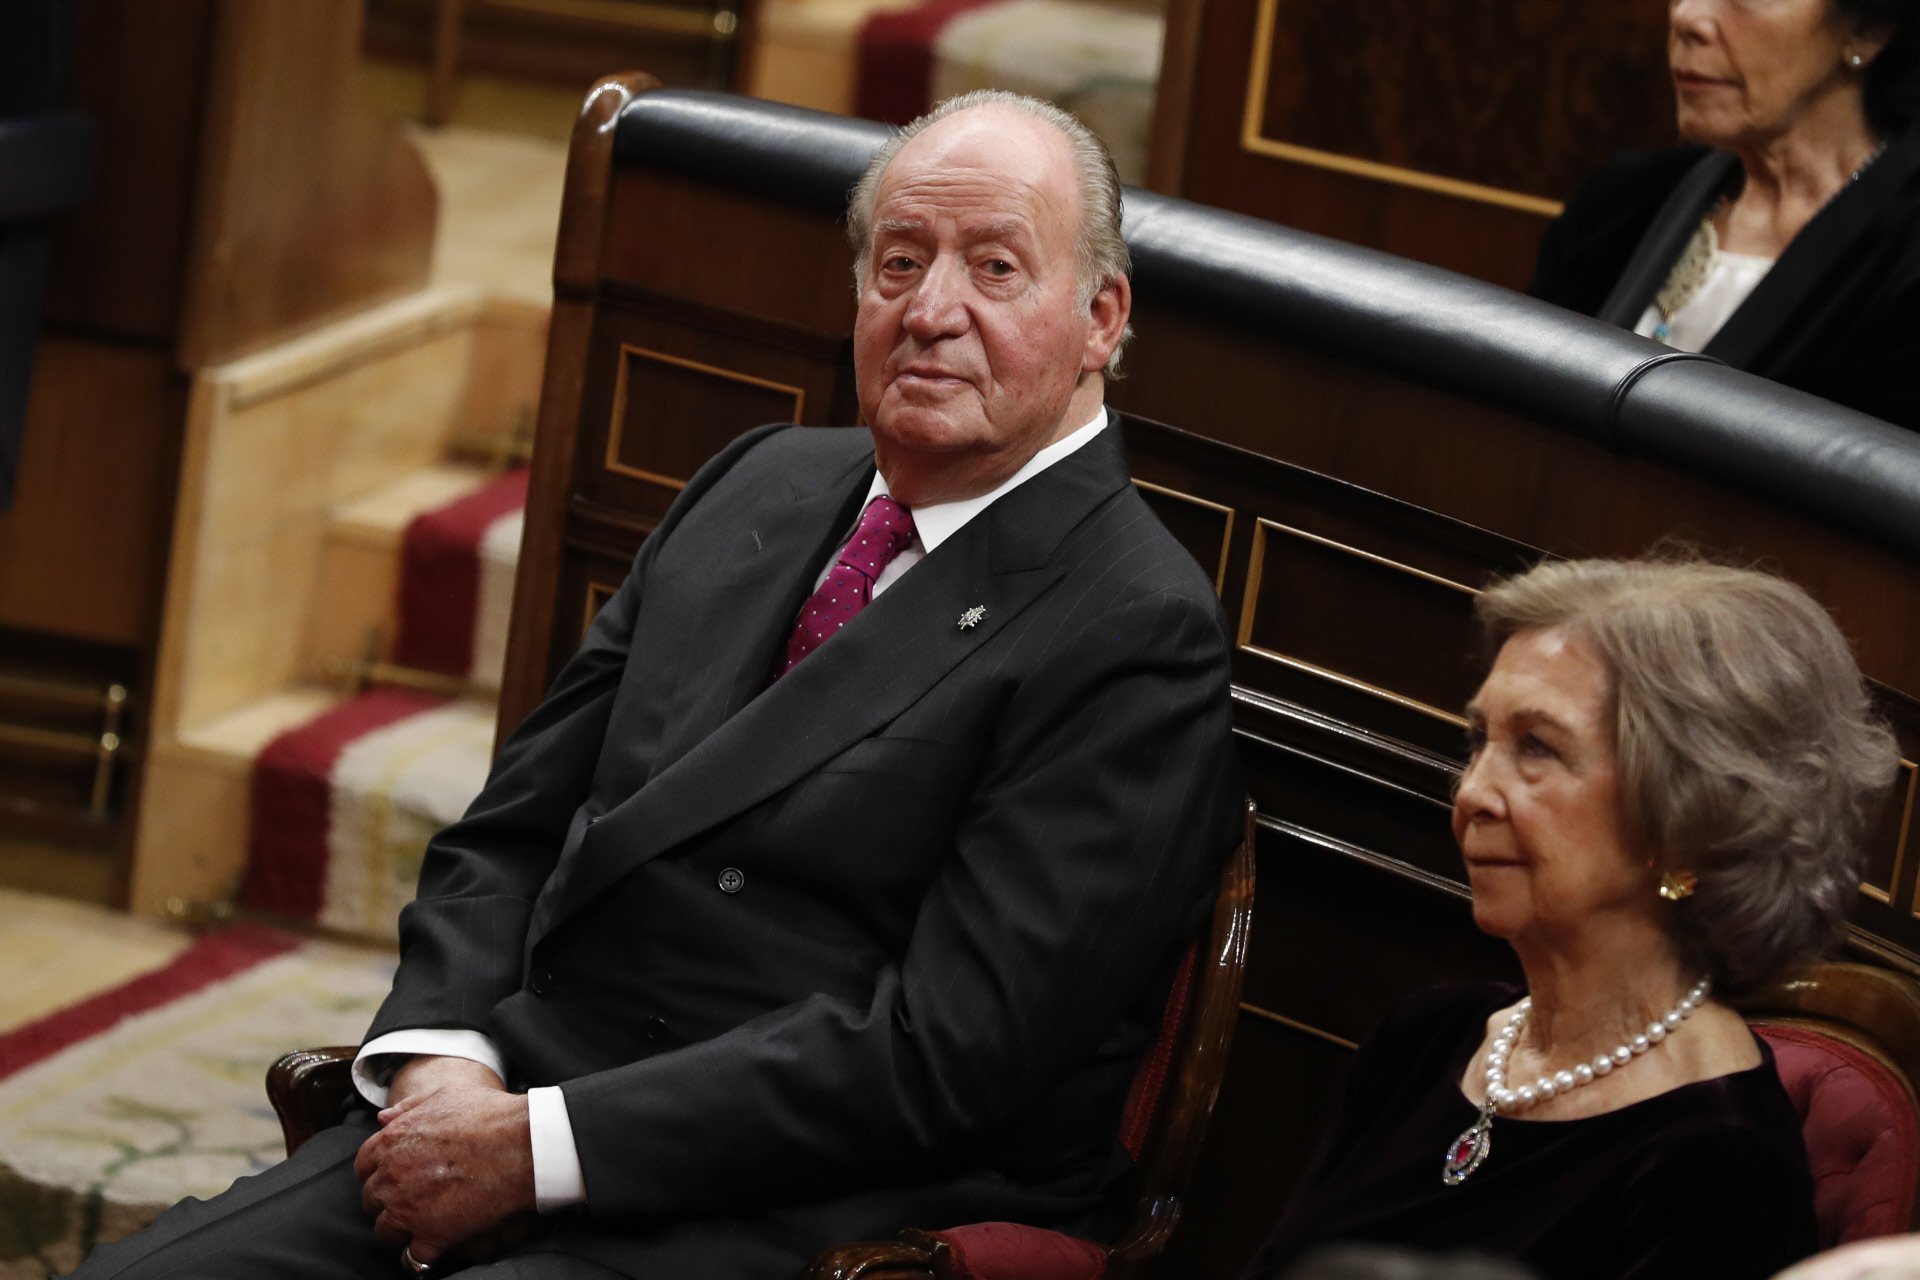 El feo de Juan Carlos a Revilla durante una cena de gala: "No quiero ni probarlo"